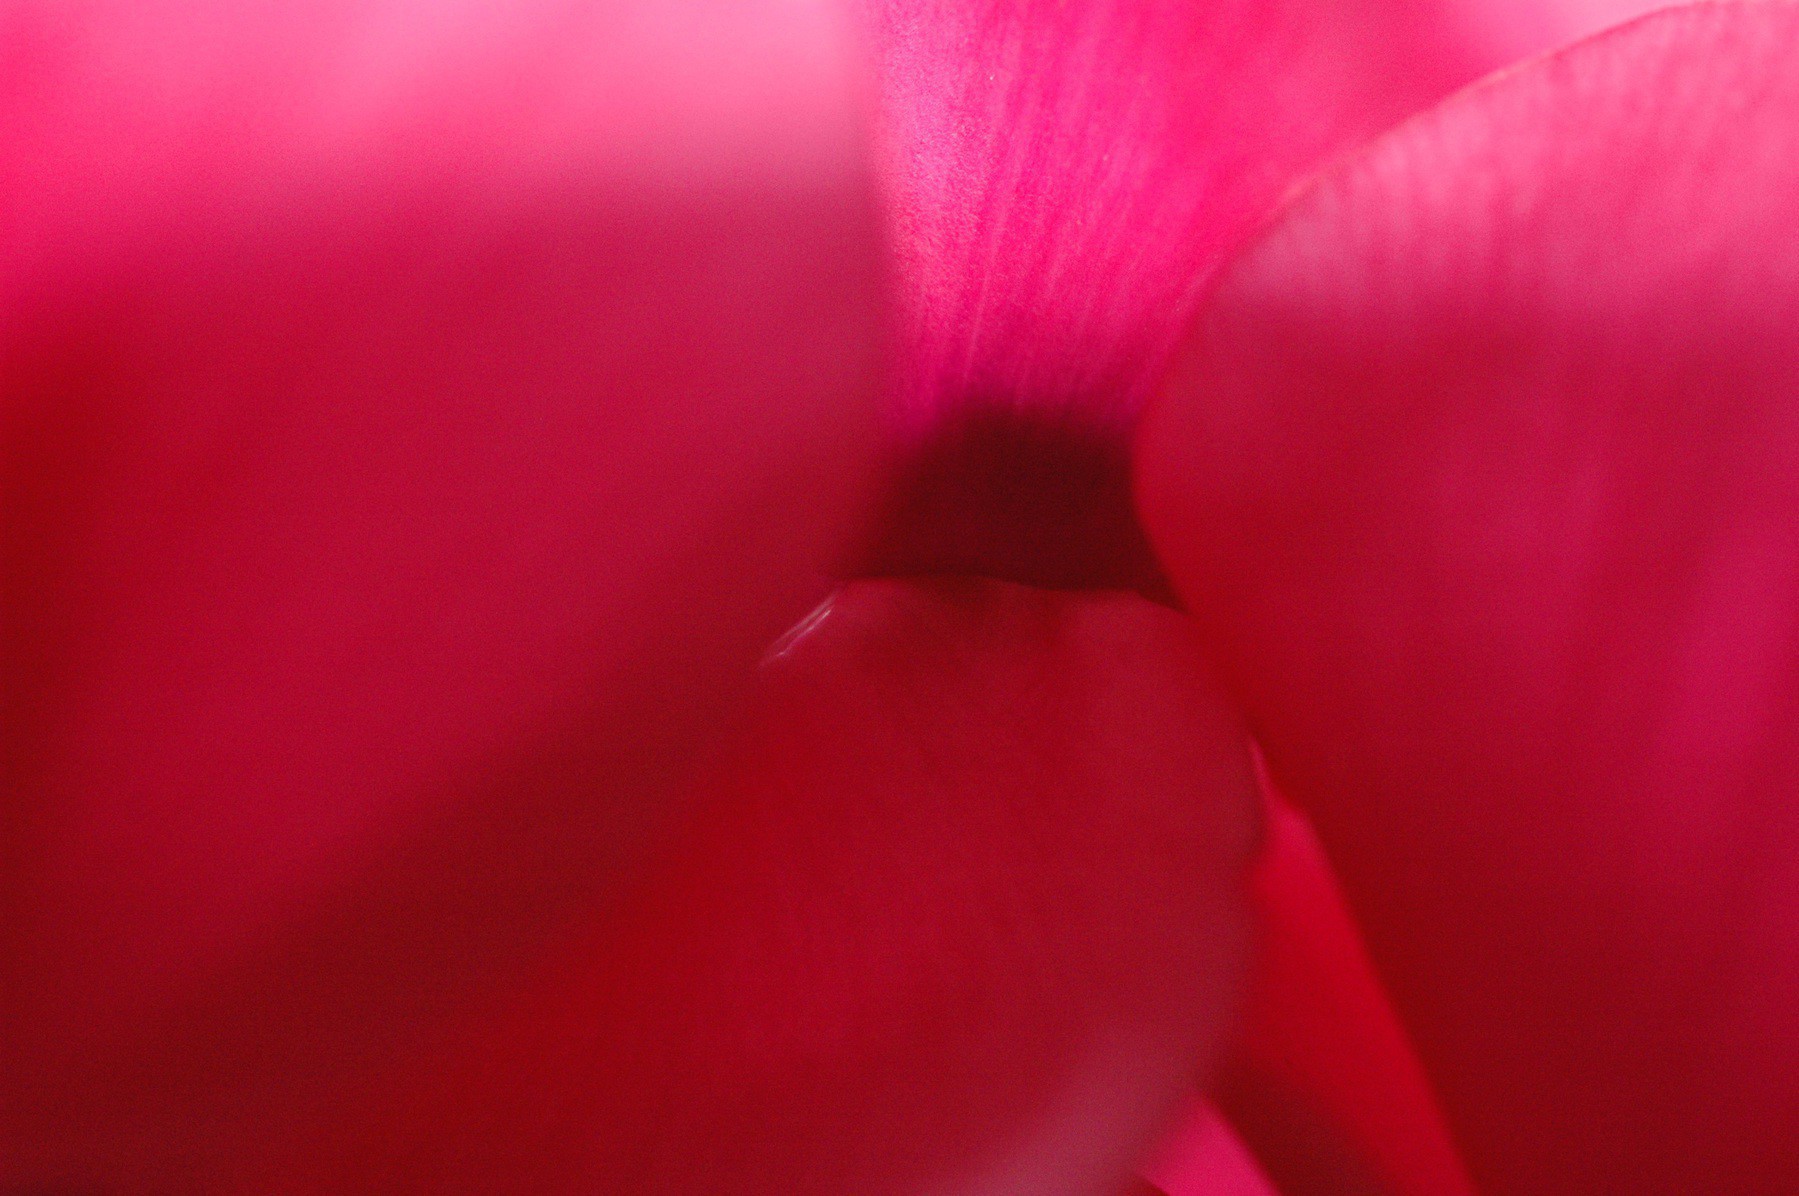 Inner part of cyclamen flower